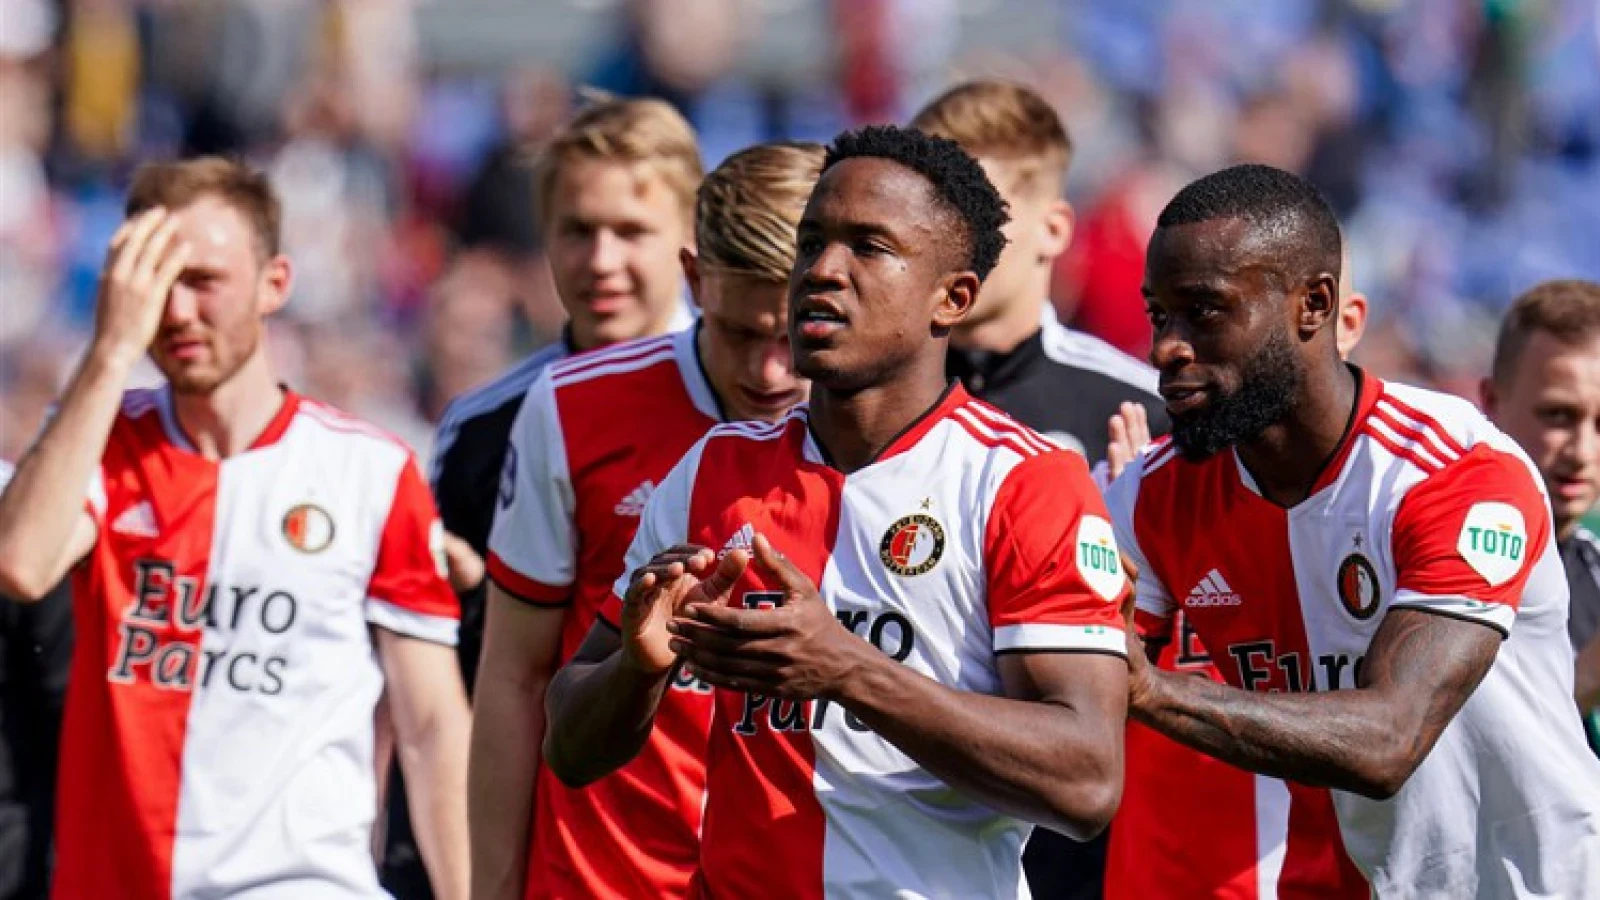 De kranten: 'Feyenoord speelt ook FC Utrecht in eigen Kuip kapot'